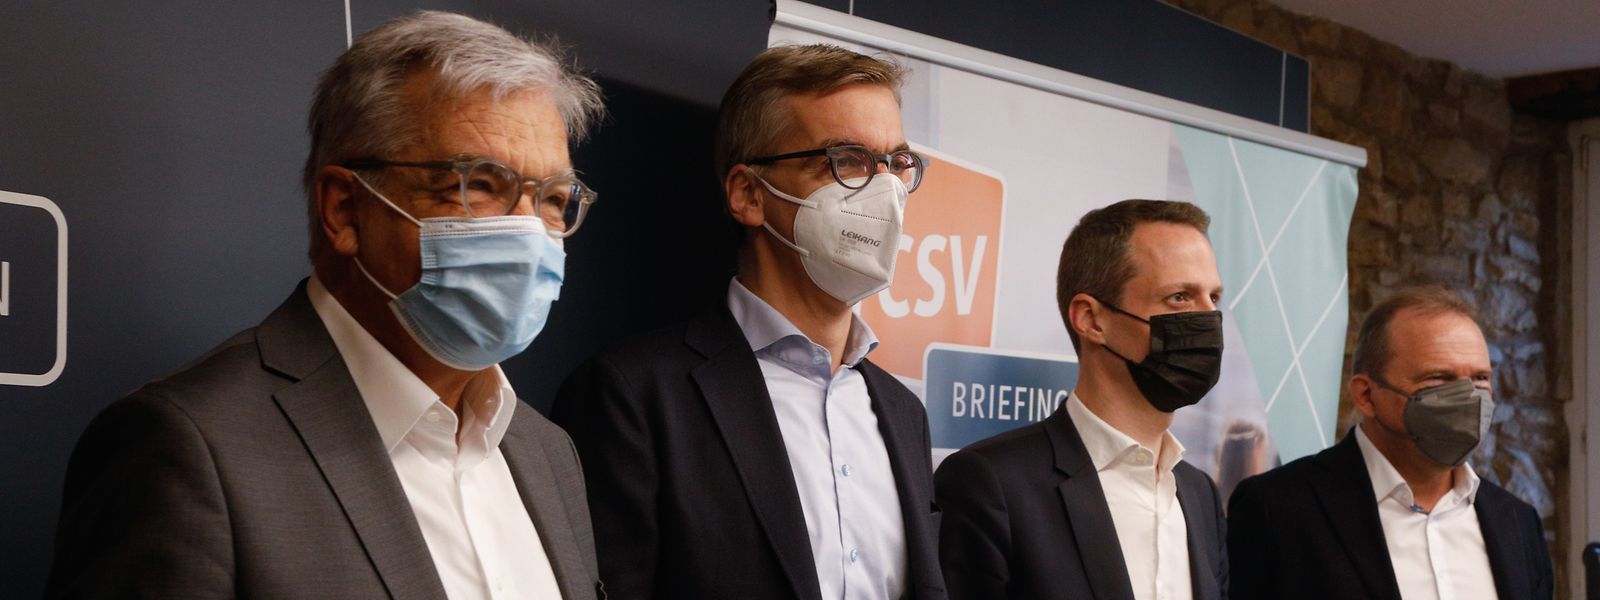 Die CSV-Abgeordneten Laurent Mosar, Léon Gloden, Serge Wilmes und der CO-Fraktionsvorsitzende Gilles Roth fordern klare Regeln im Umgang mit gewaltbereiten Demonstranten. 